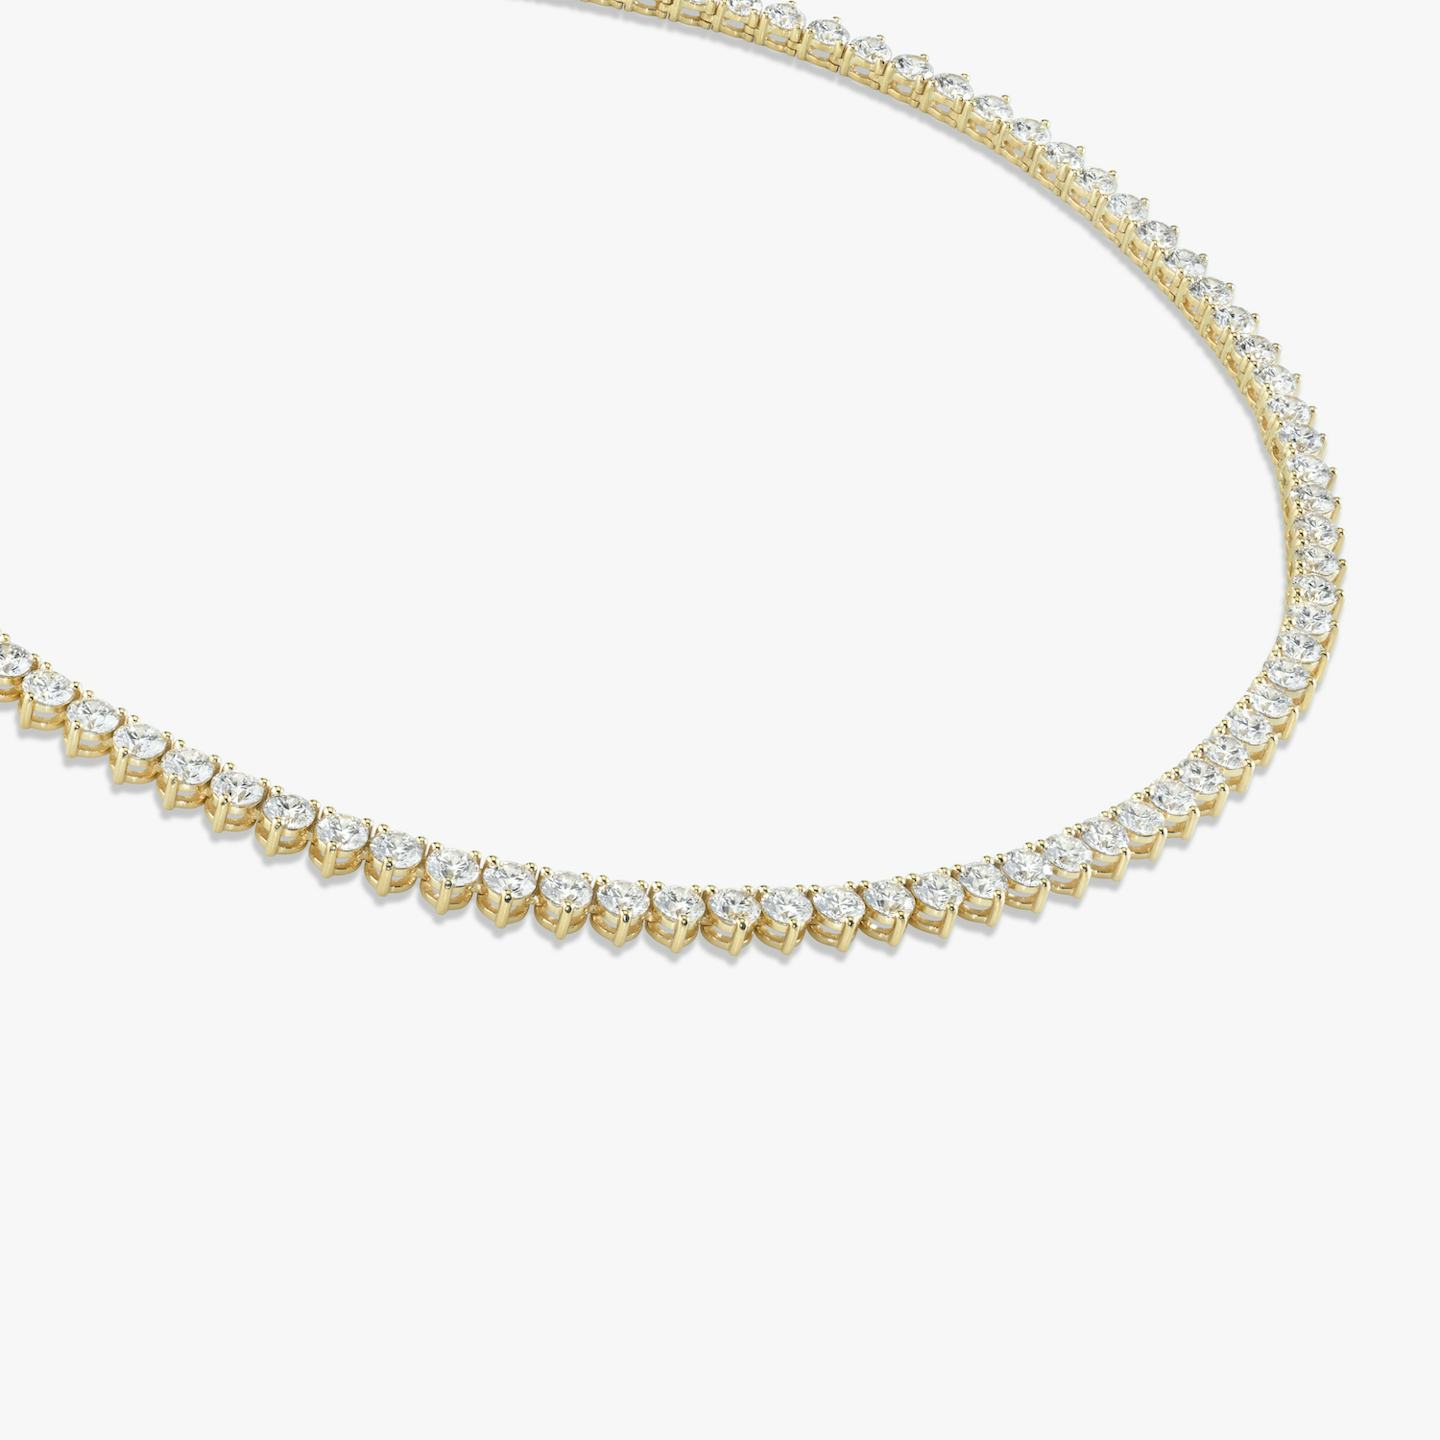 Collar de Tenis | Brillante | 14k | Oro amarillo de 18 quilates | Tamaño de los diamantes: Large | Longitud de la cadena: 16